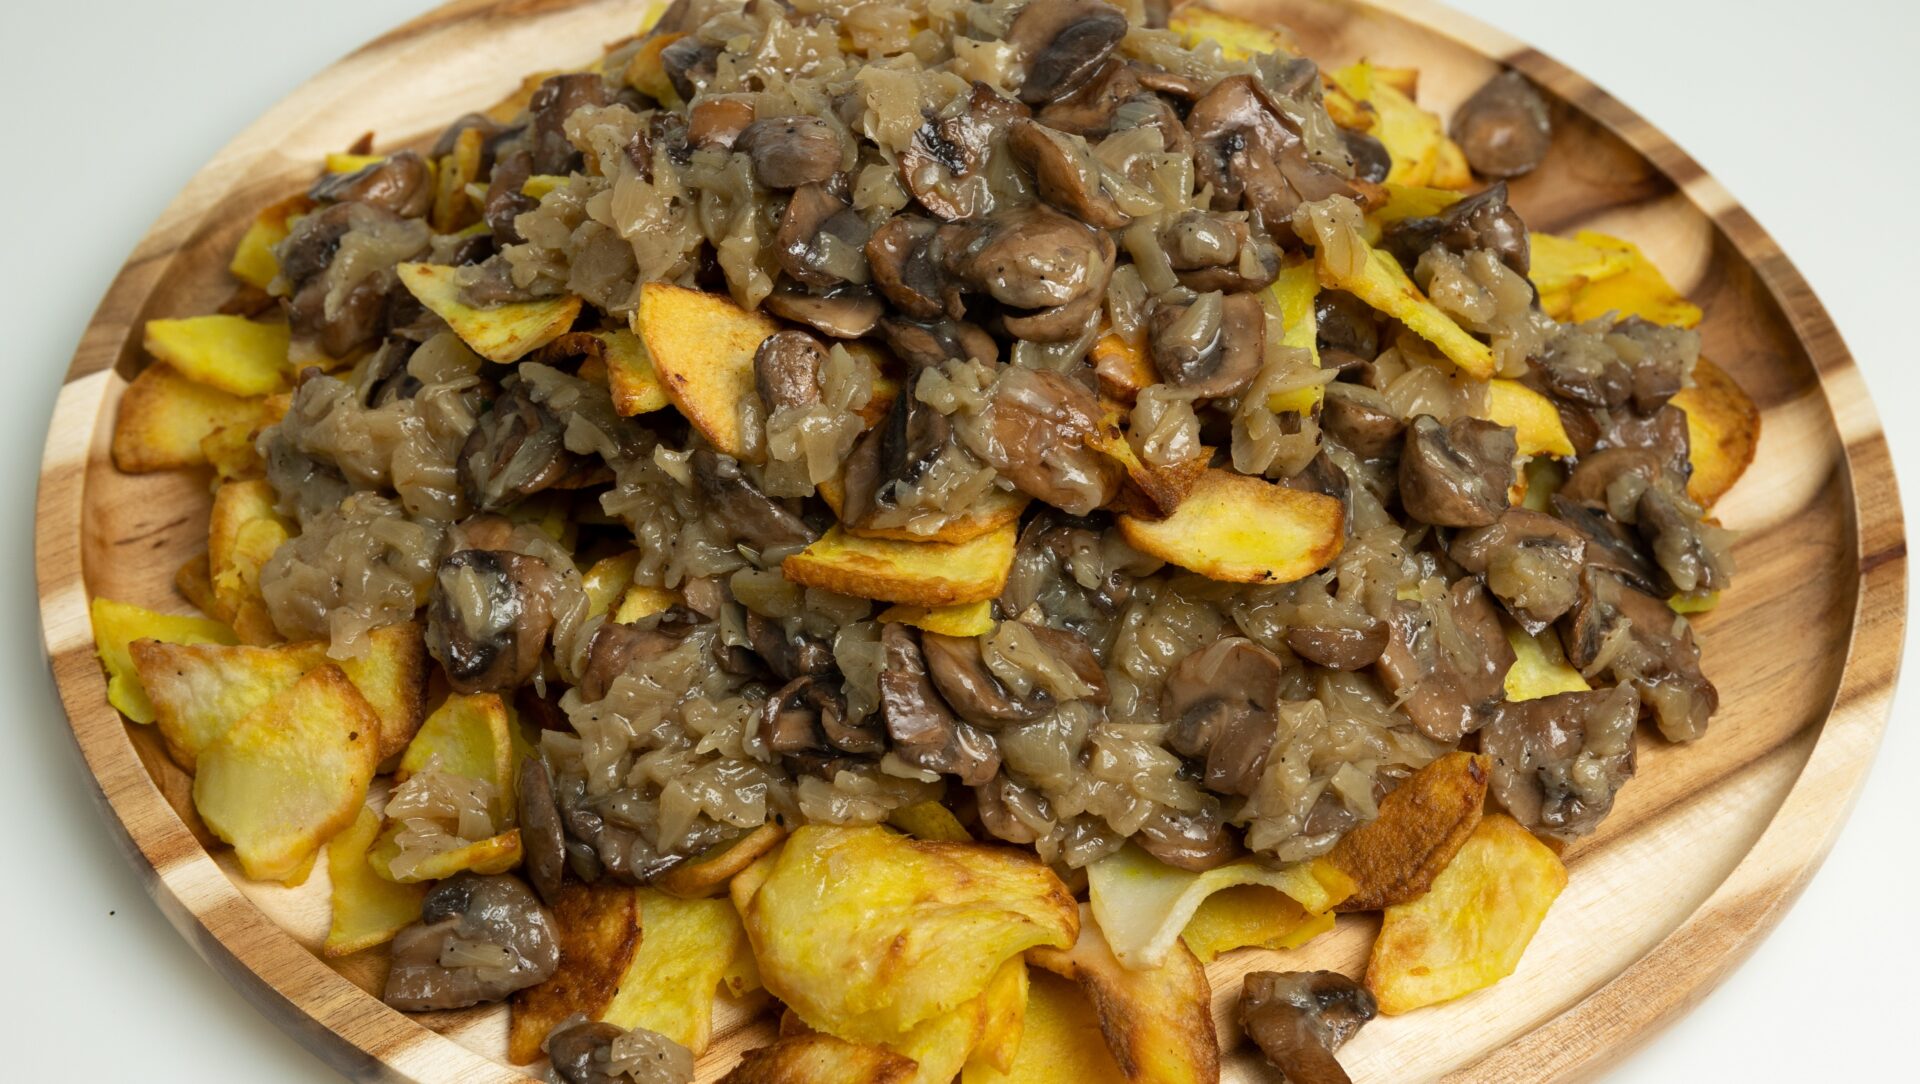 Pan fried Potato with Mushroom